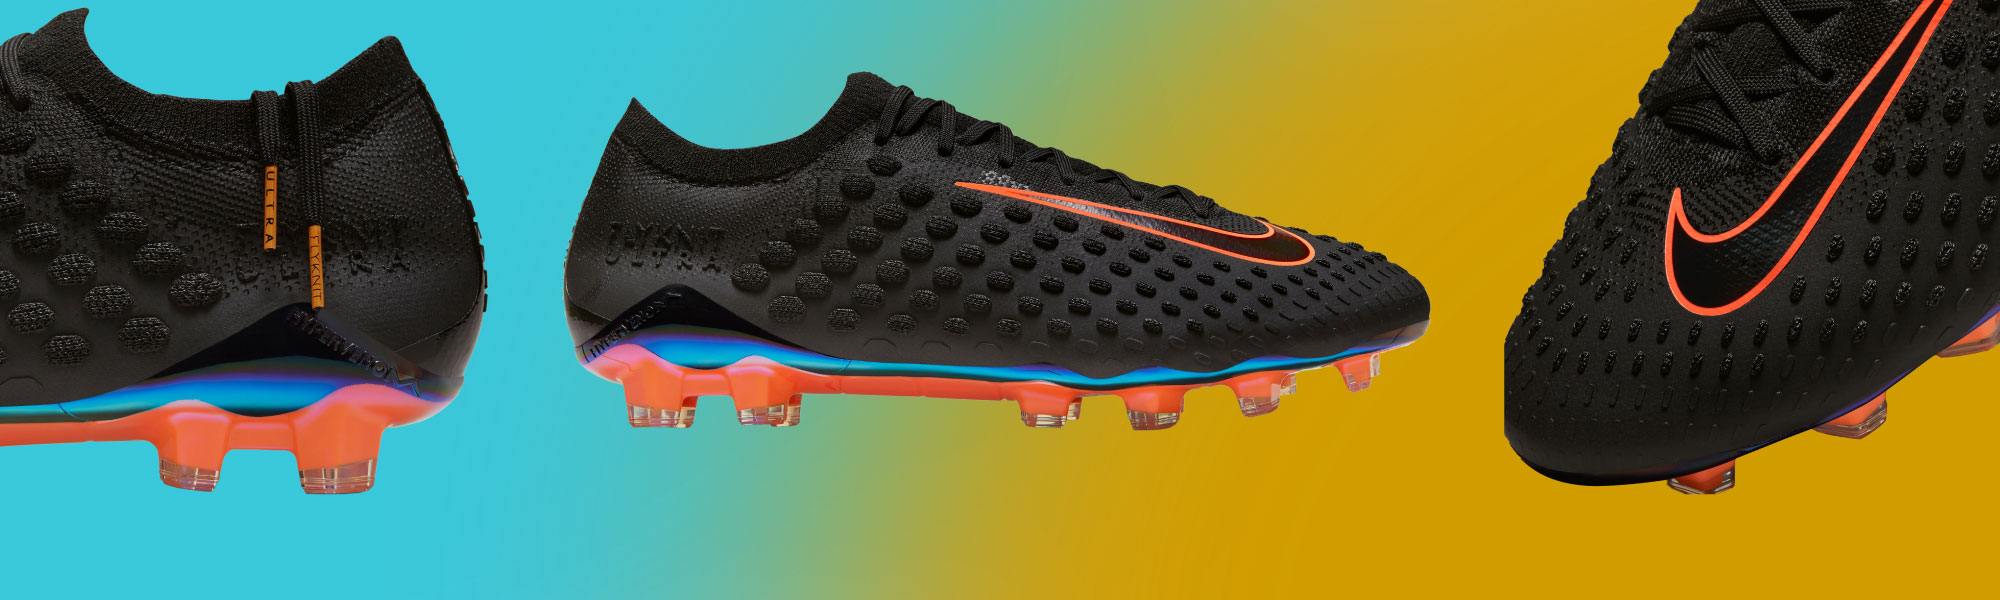 Nike Flyknit Ultra Soccer Shoes - SoccerPro